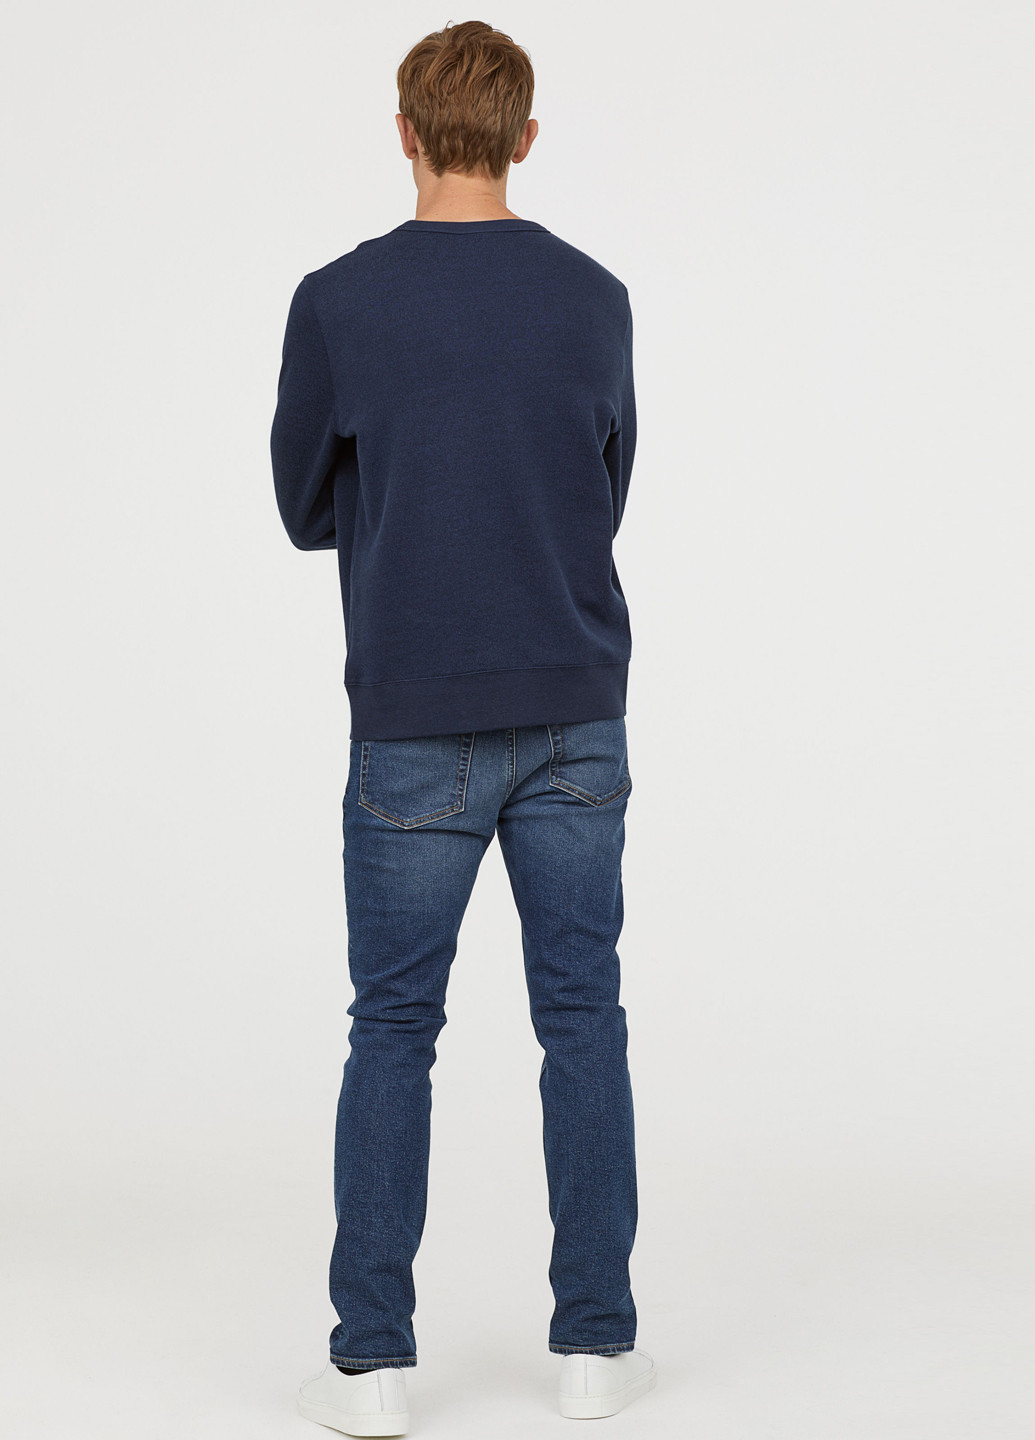 Джинси H&M однотонні темно-сині джинсові